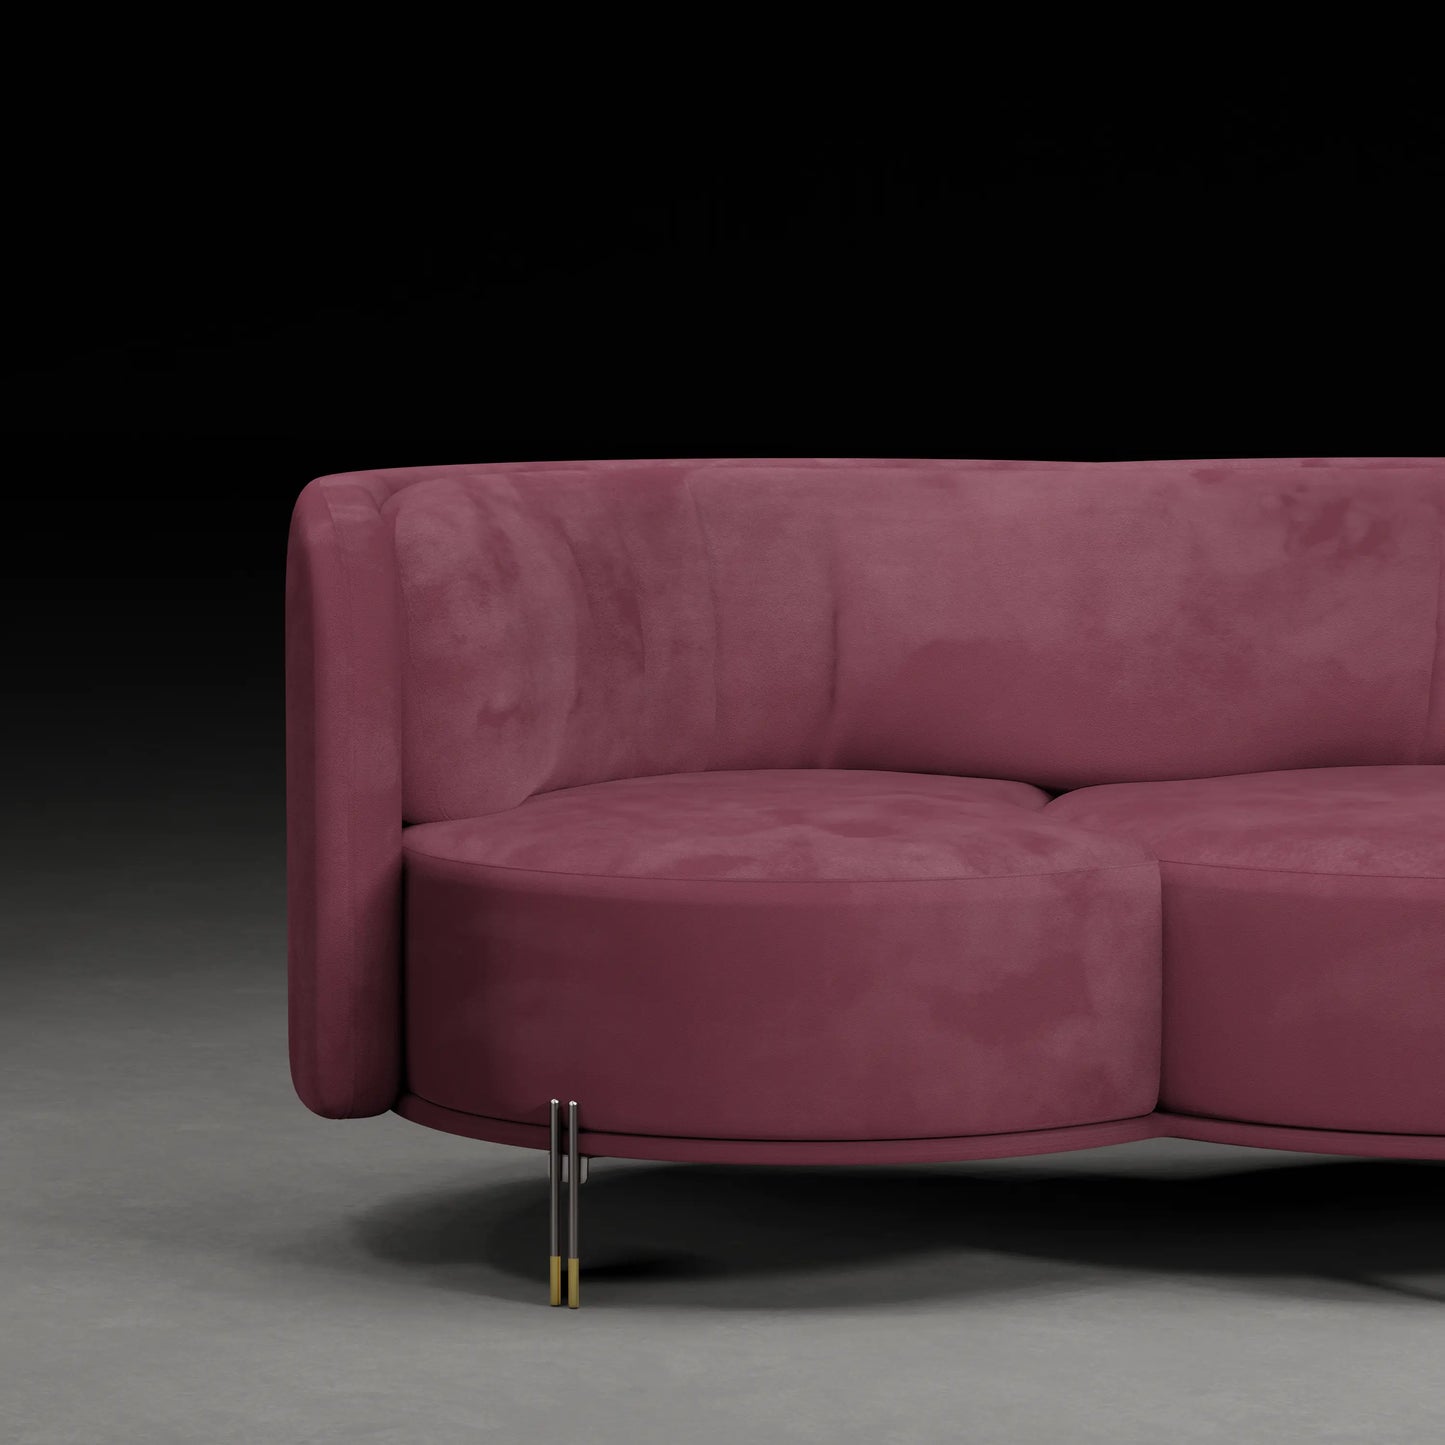 LOTUS - 3 Seater Premium Sofa in Velvet Finish | Plum Colour